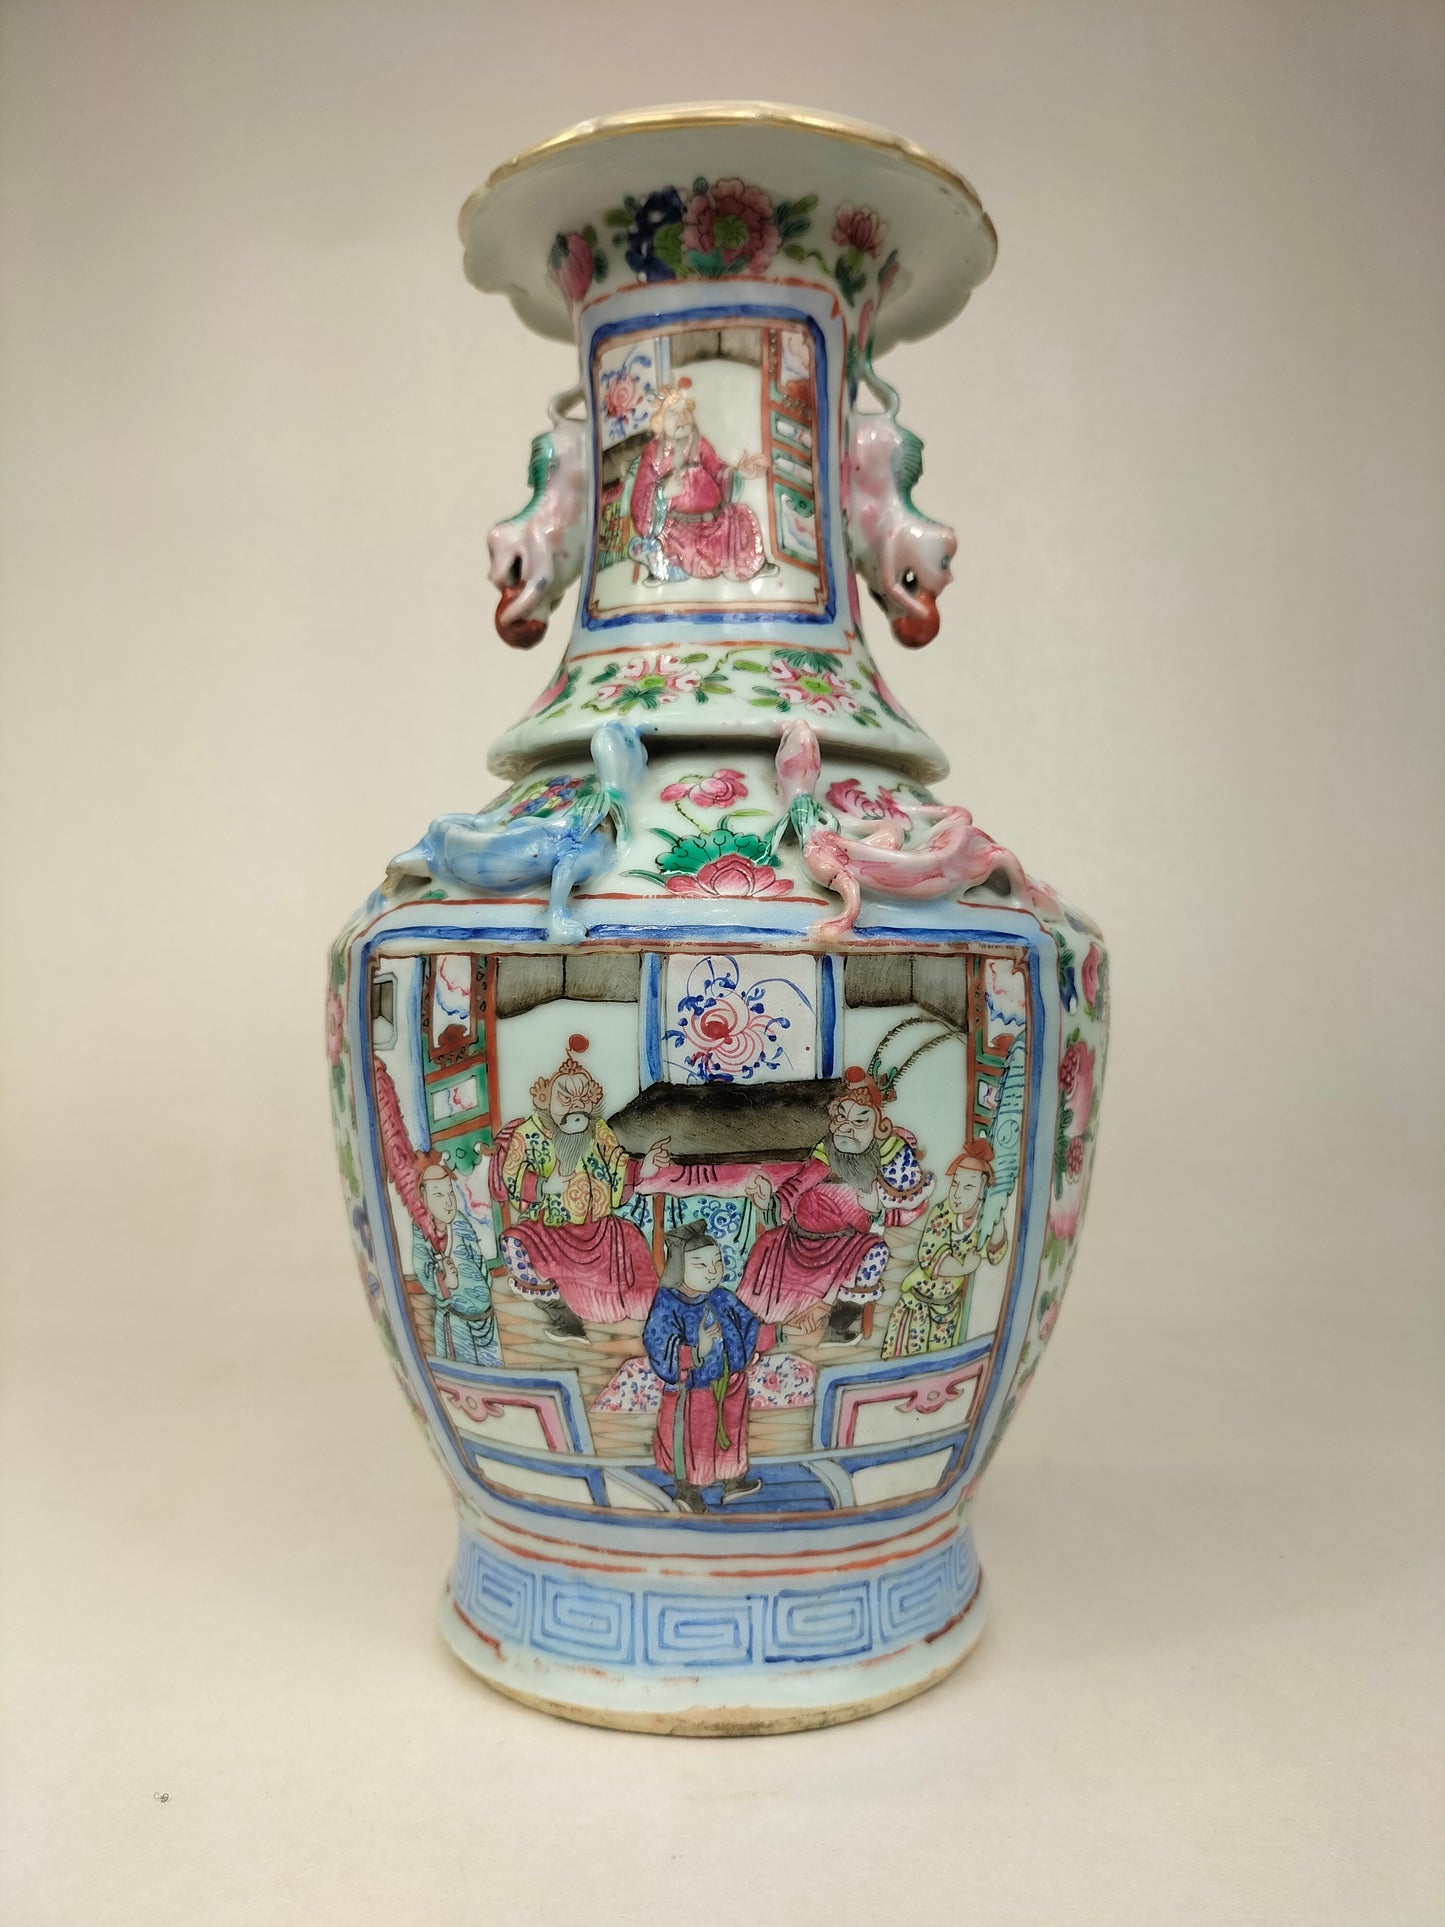 مزهرية كانتون صينية أثرية مزينة بمنظر إمبراطوري // عهد أسرة تشينغ - القرن التاسع عشر